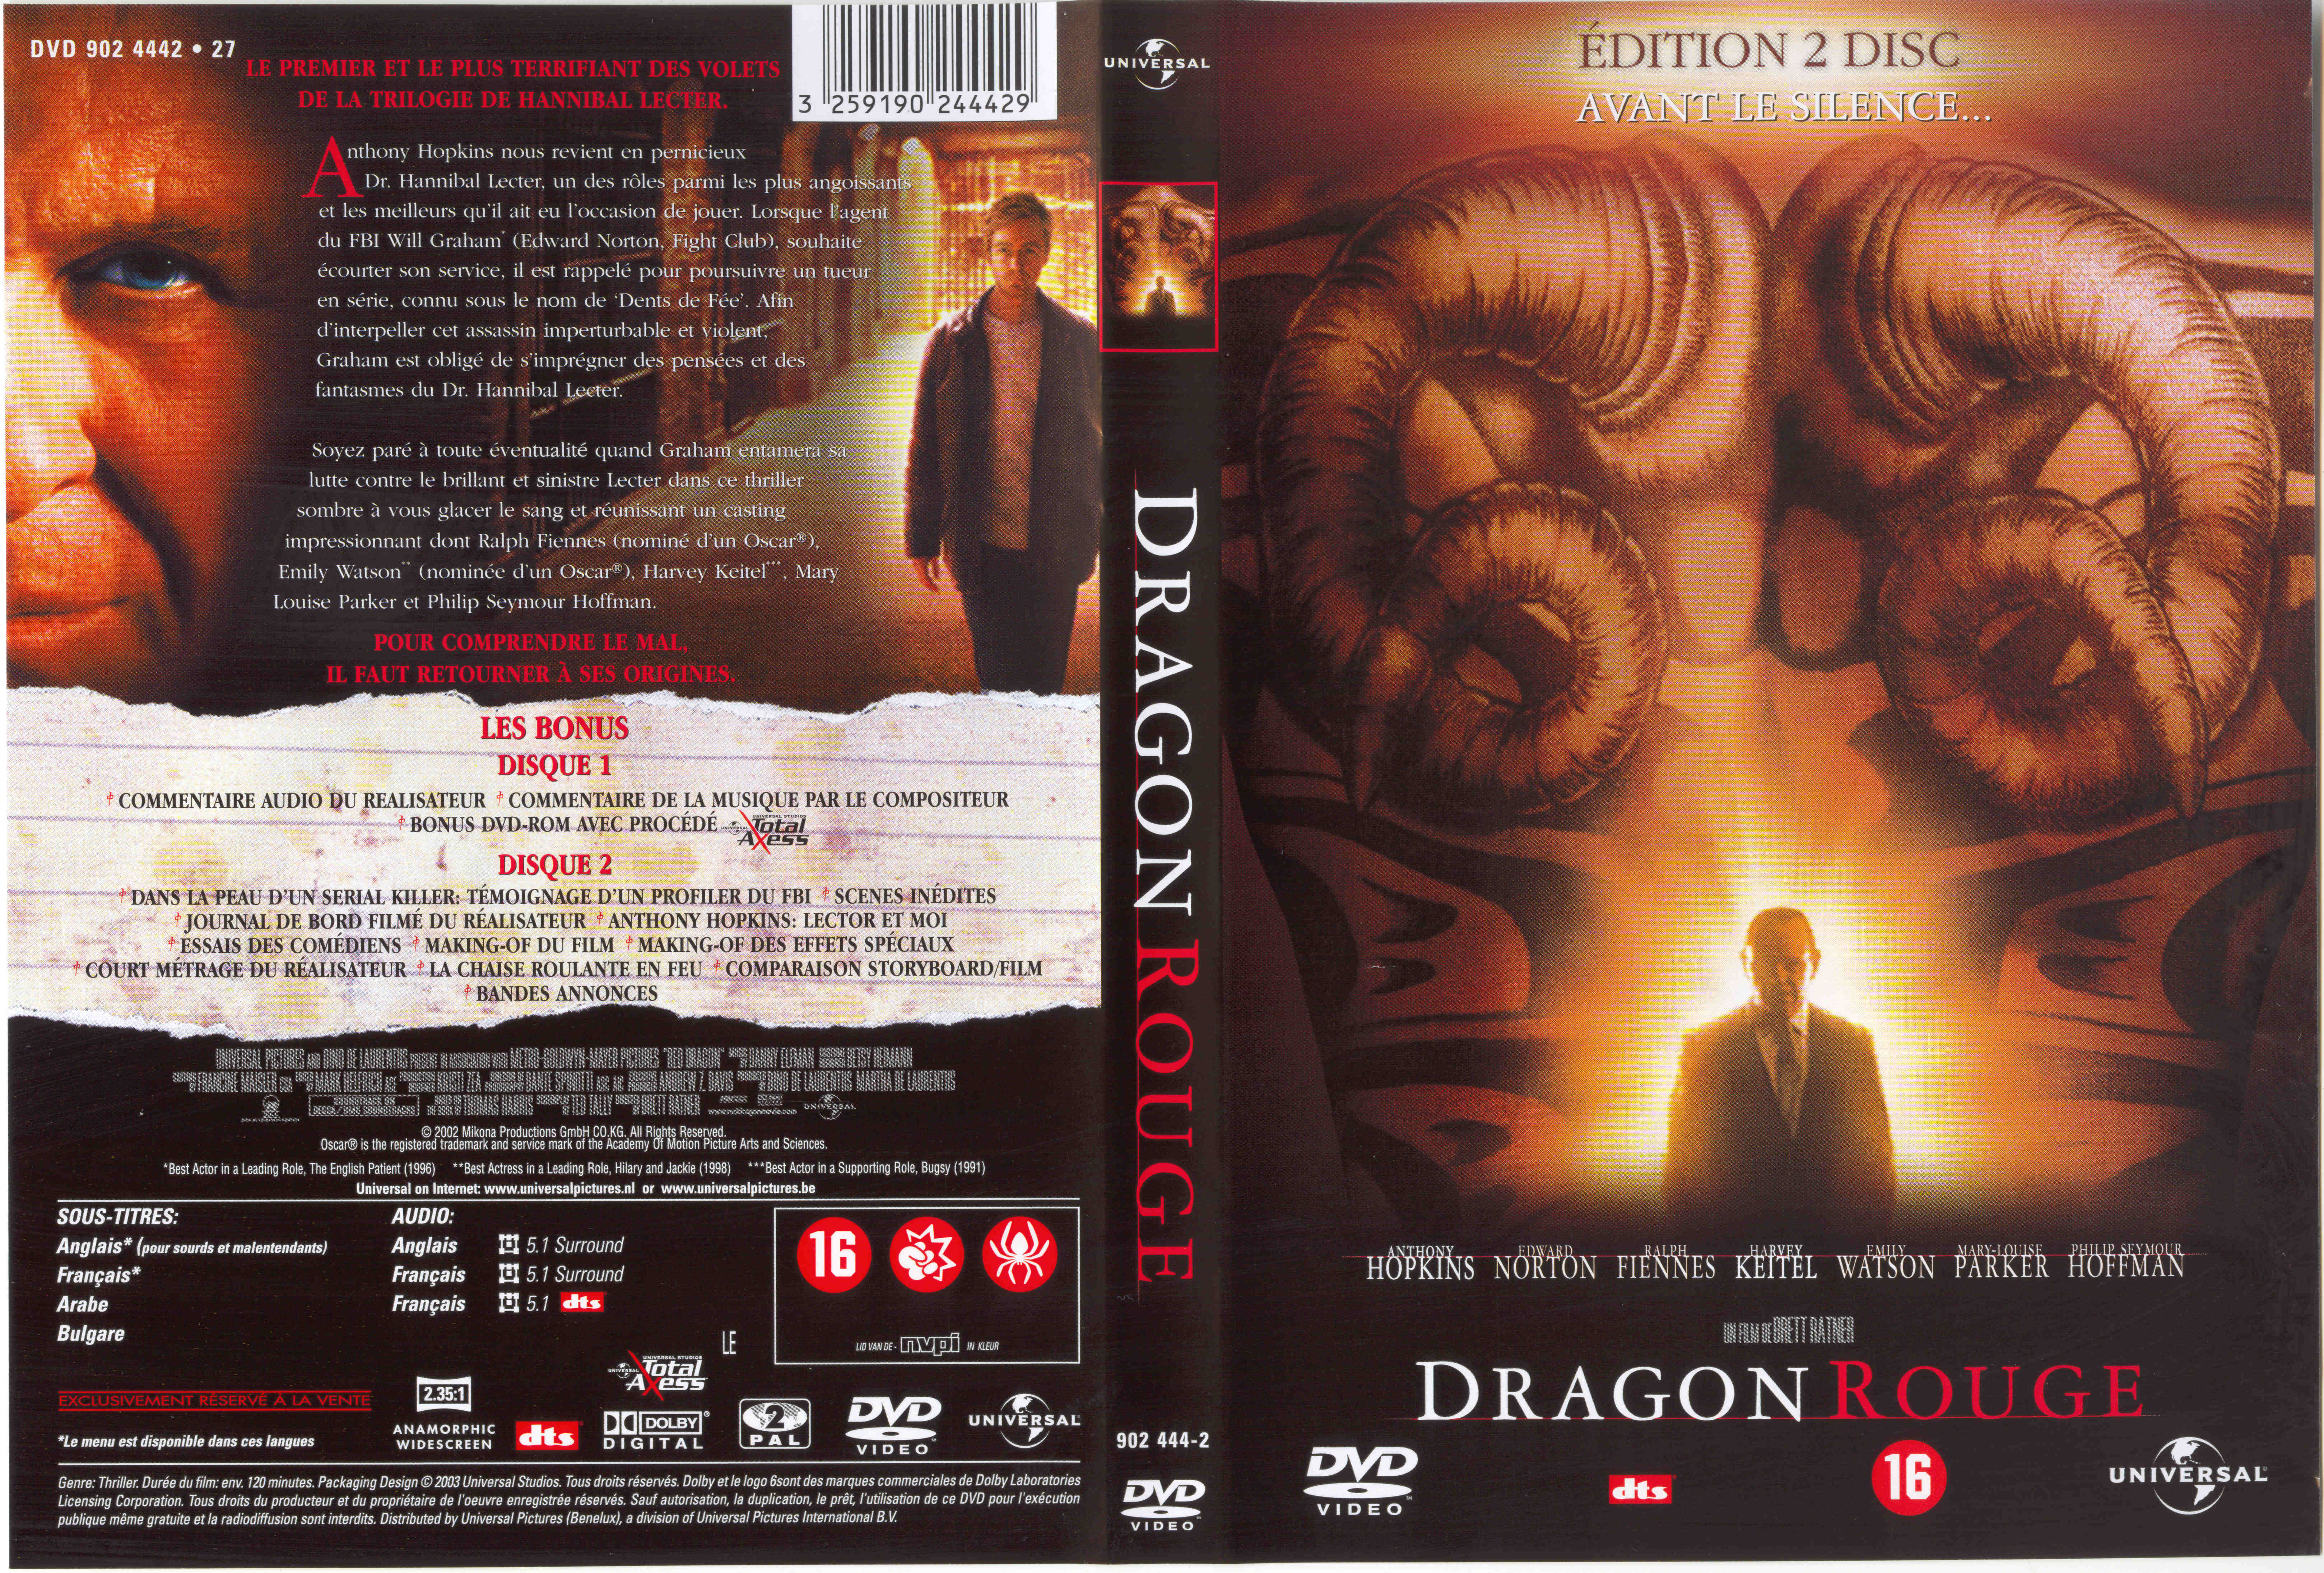 Jaquette DVD Dragon rouge v3